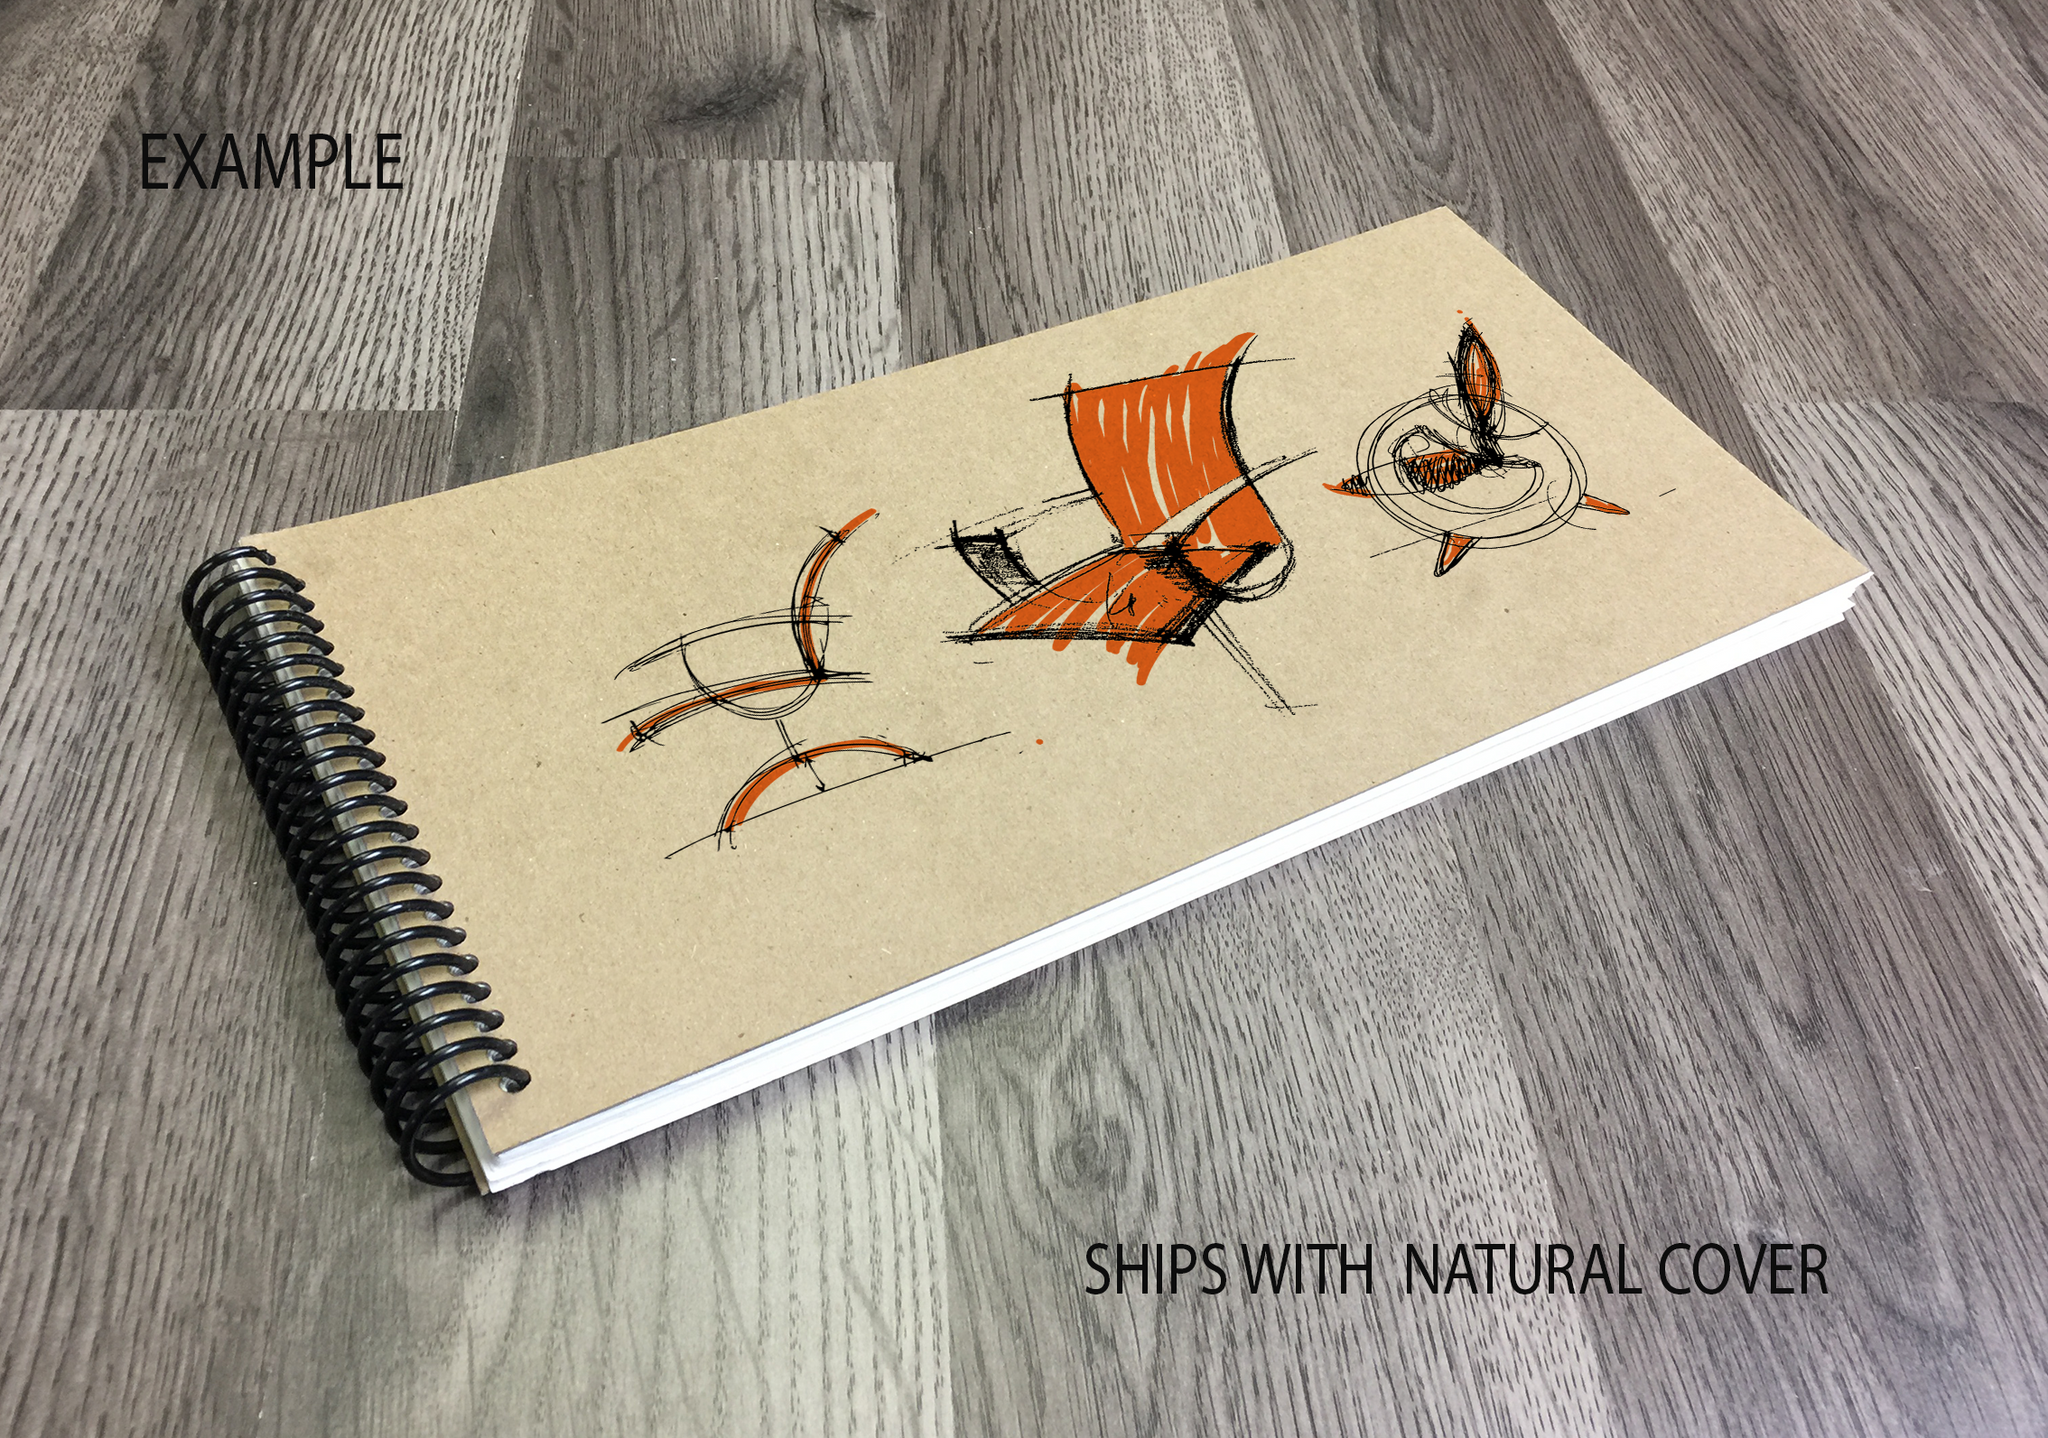 simple sketchbook covers